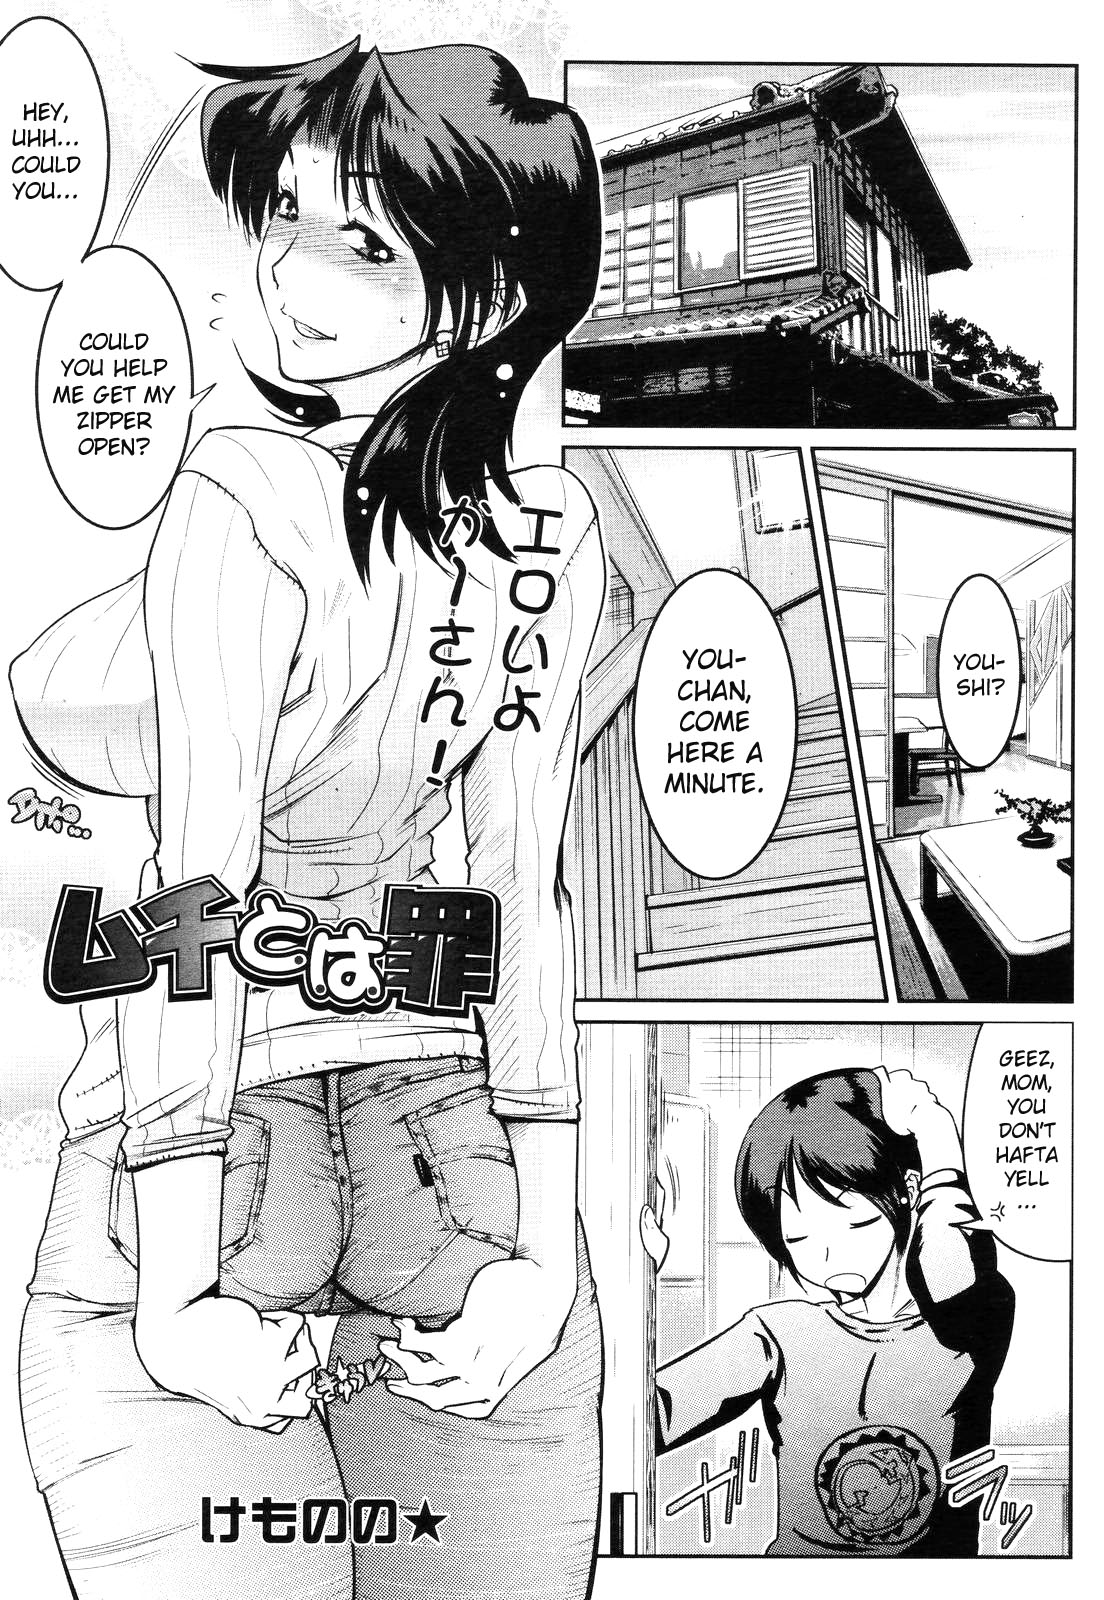 Read [Kemonono] Muchi to ha Zai 1-3 [ENG] Hentai Online porn manga ...